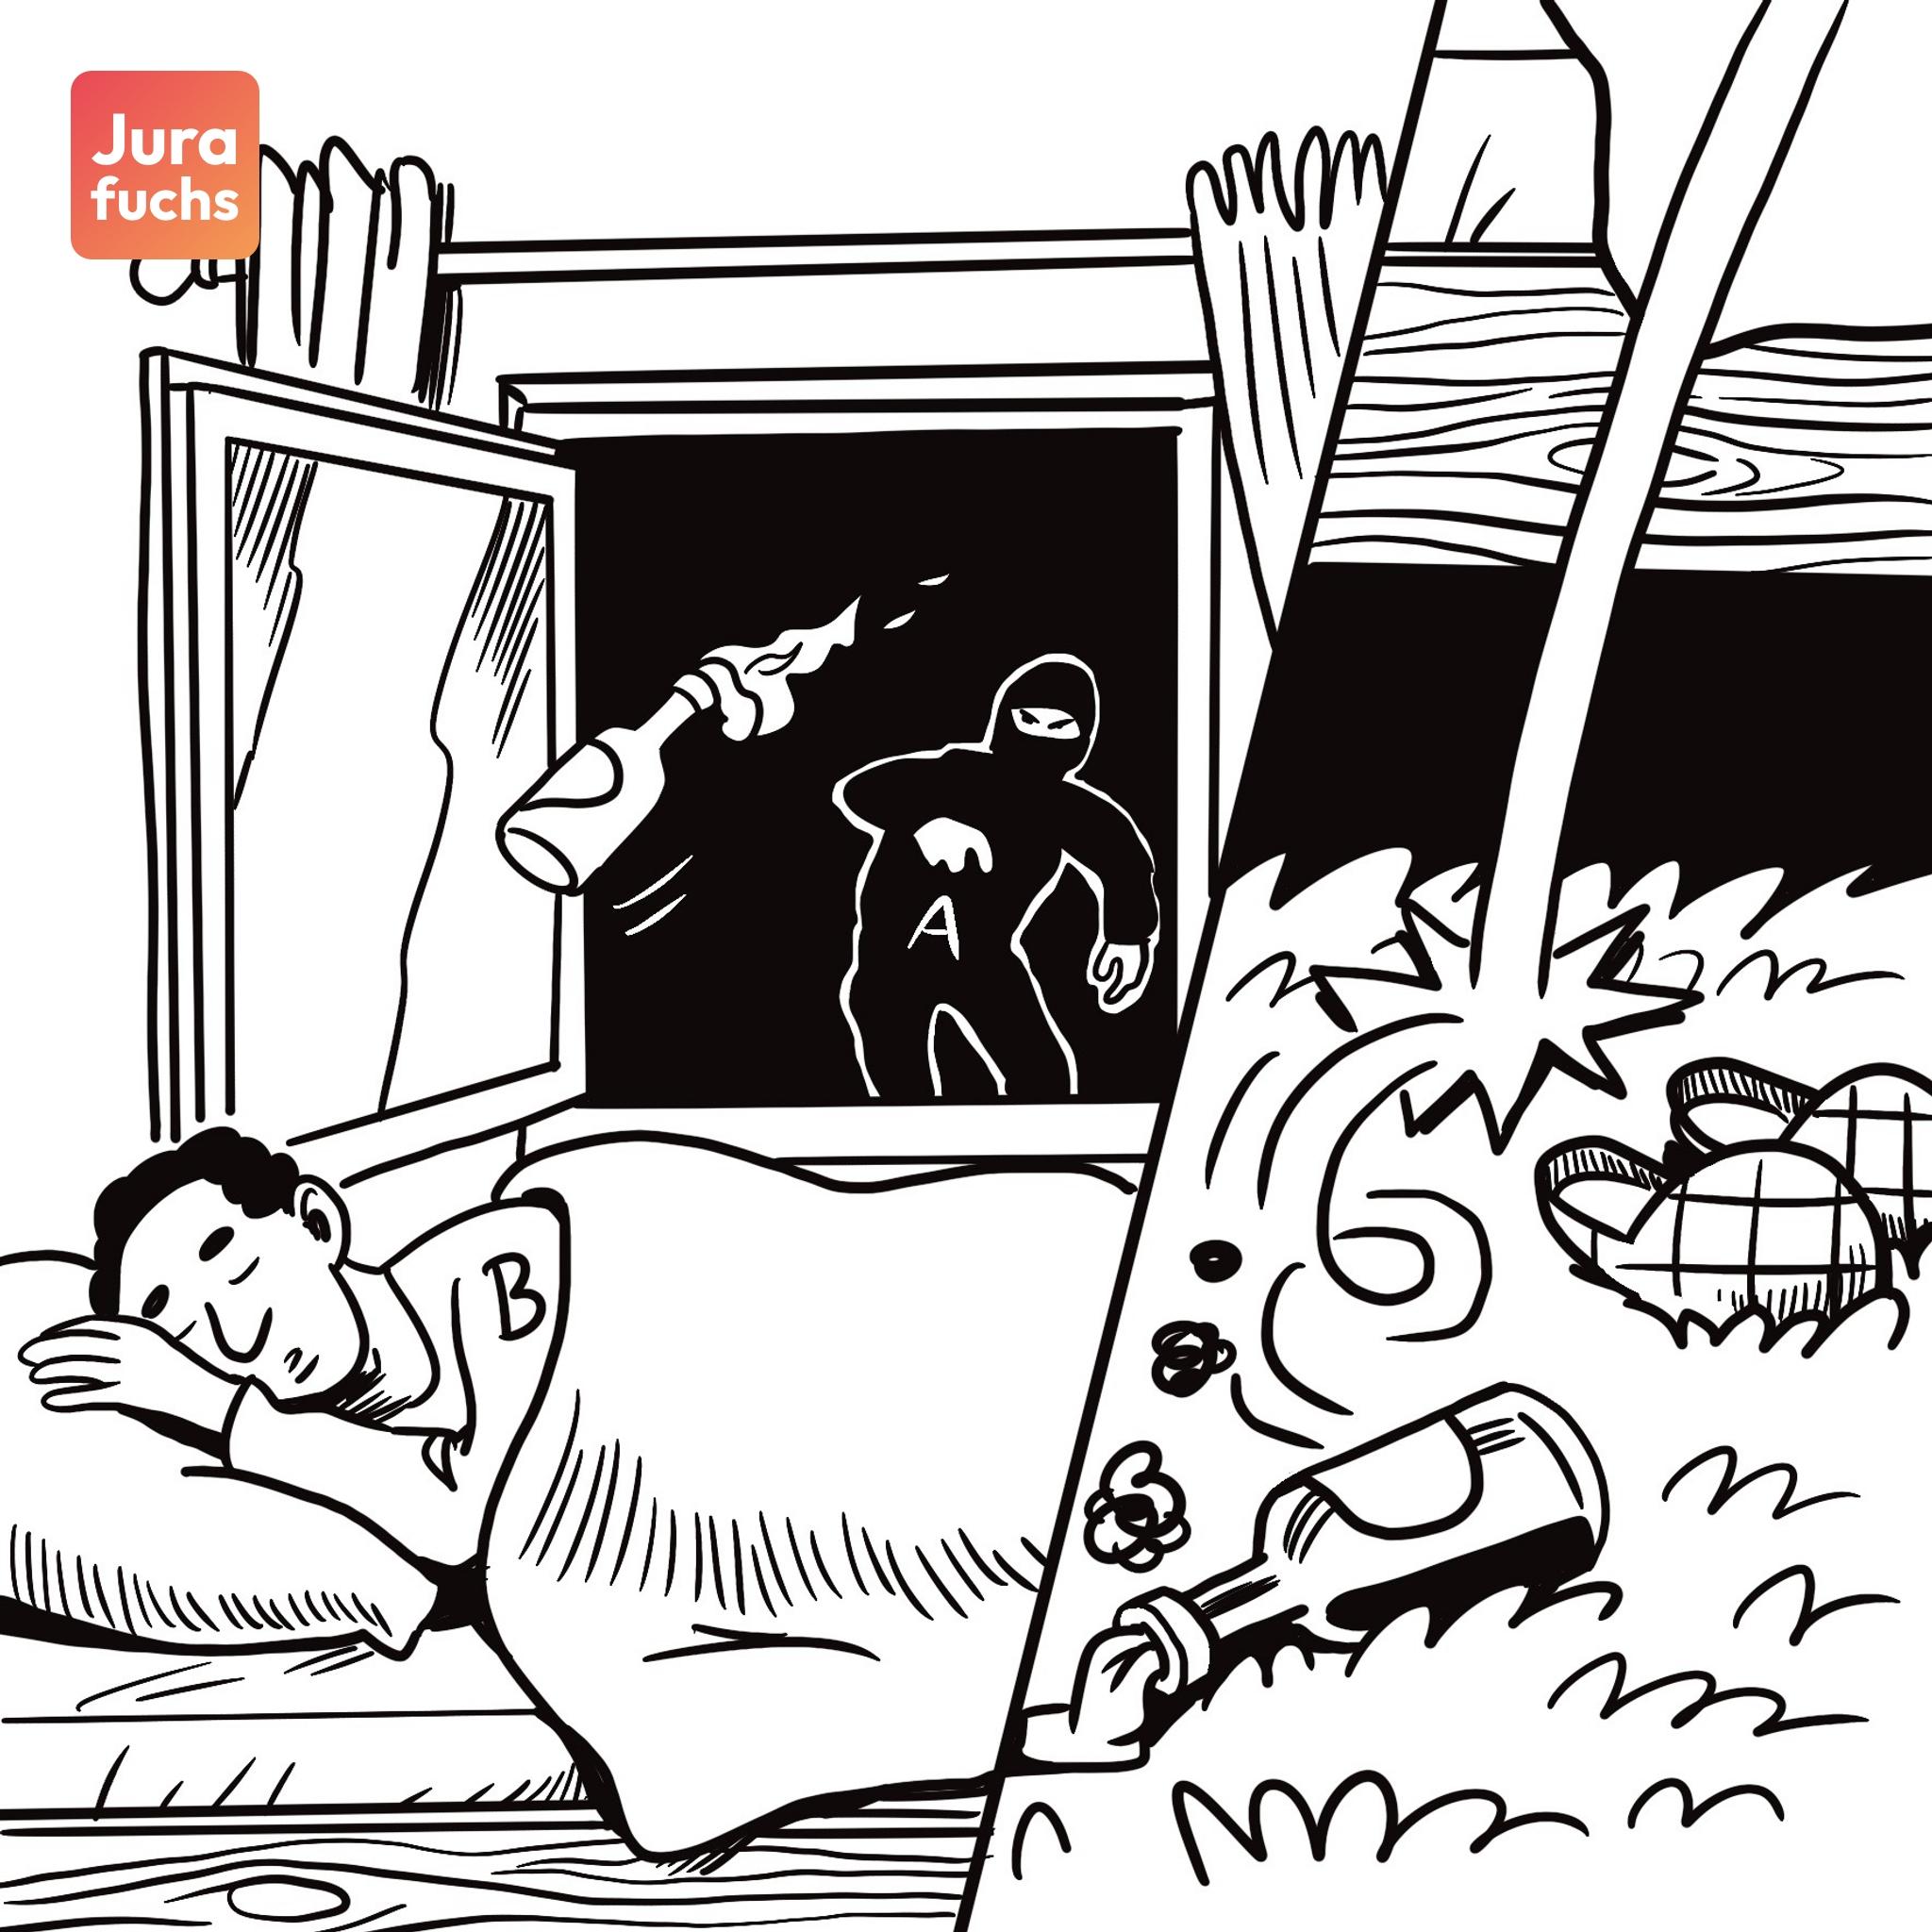 Jurafuchs Illustration: A wirft einen Molotowcocktail durch das offene Fenster in das Zimmer, in dem B gerade schläft. Ein Feuer entzündet sich aber nicht. 